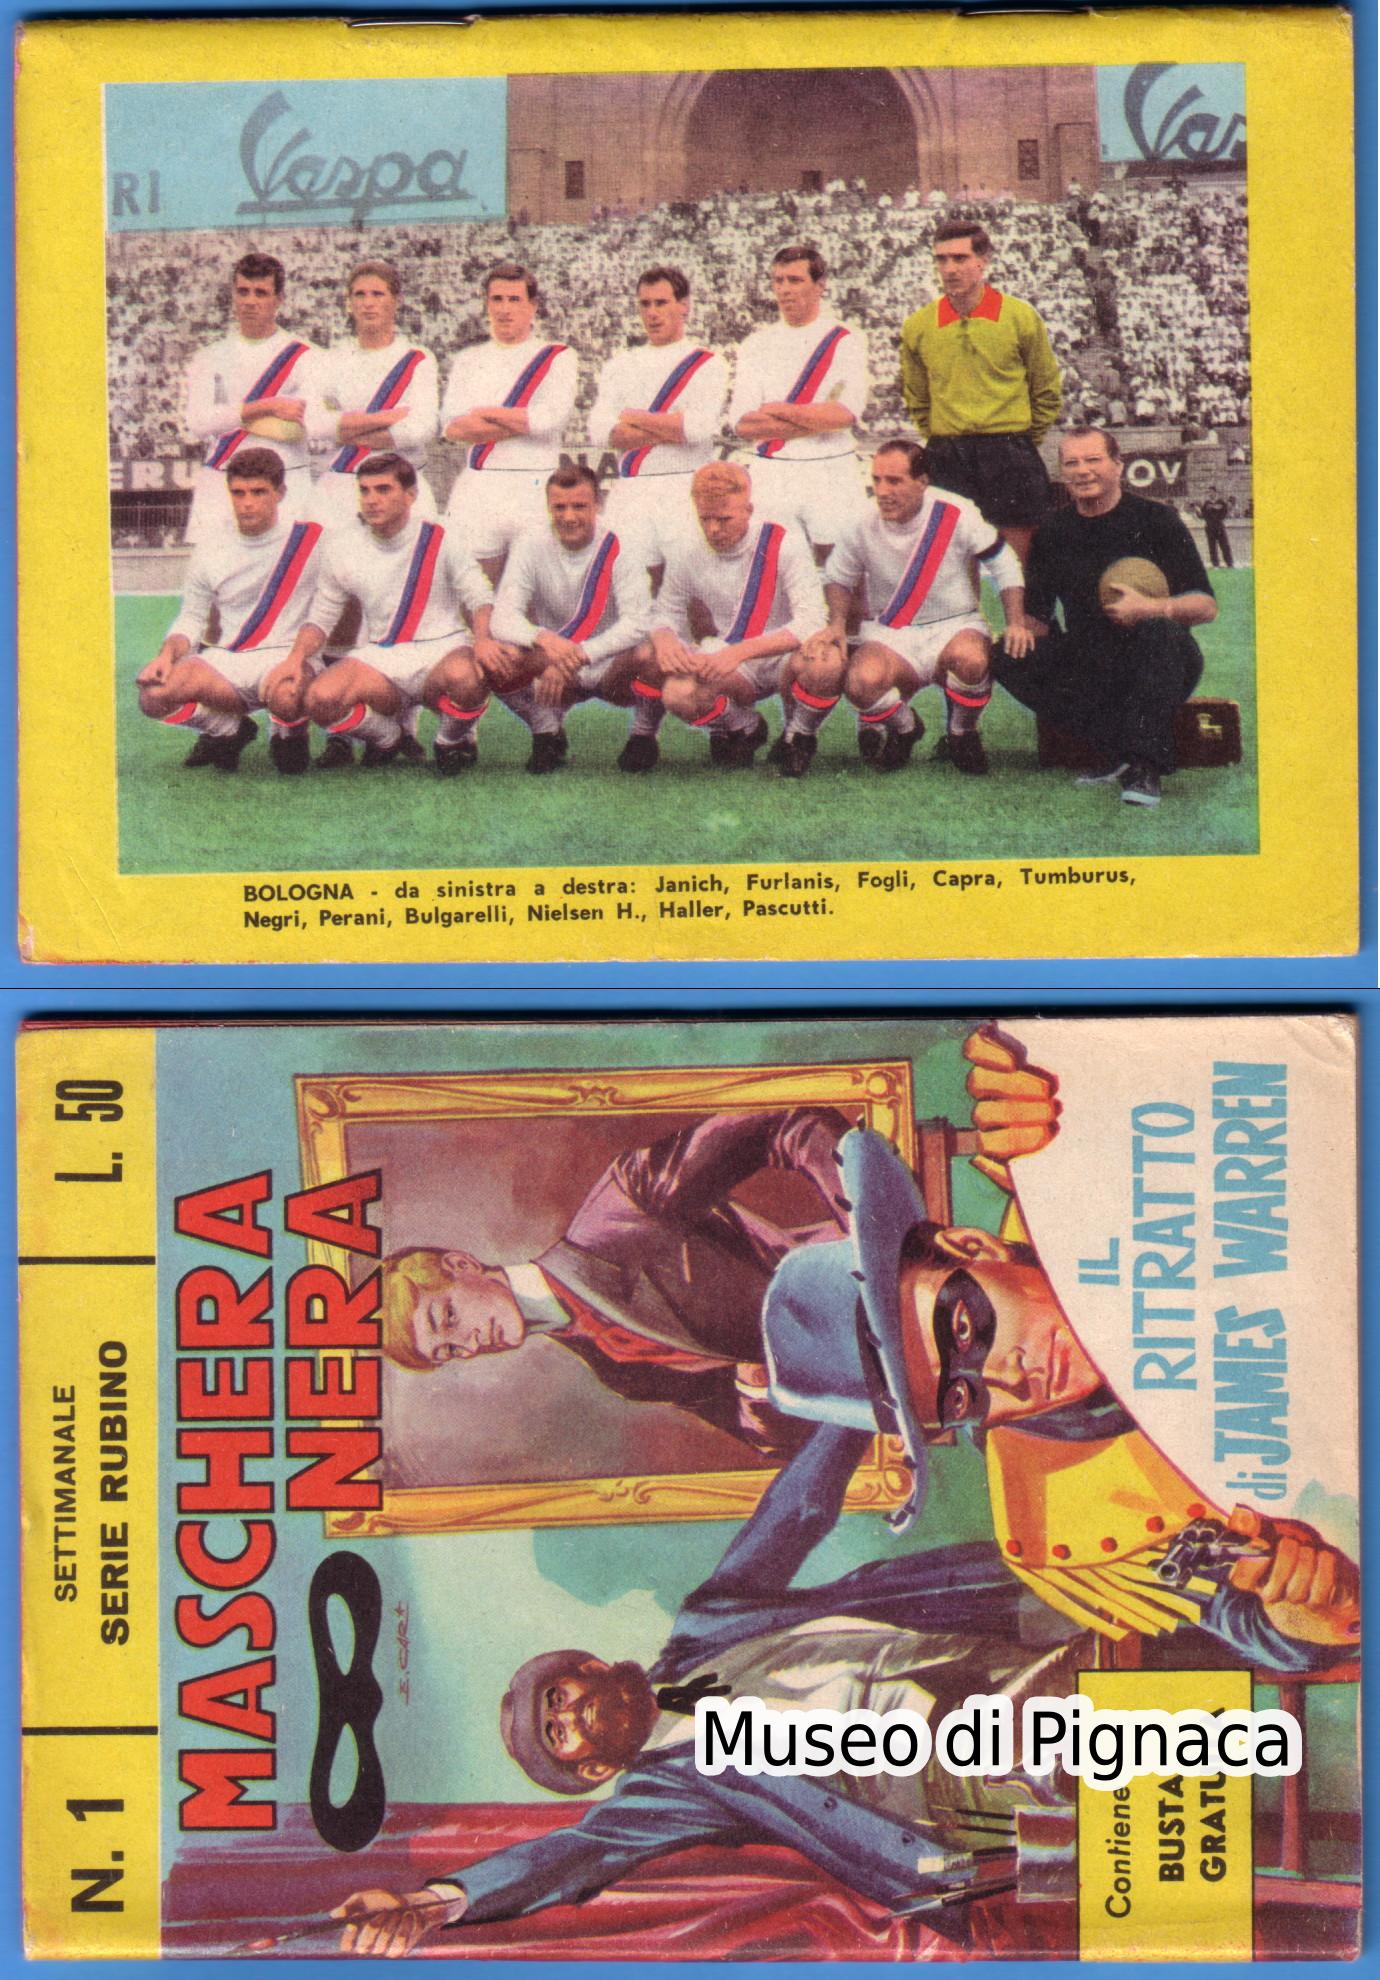 1964 9 maggio - fumetto Maschera Nera edizioni Corno (foto Bologna FC)